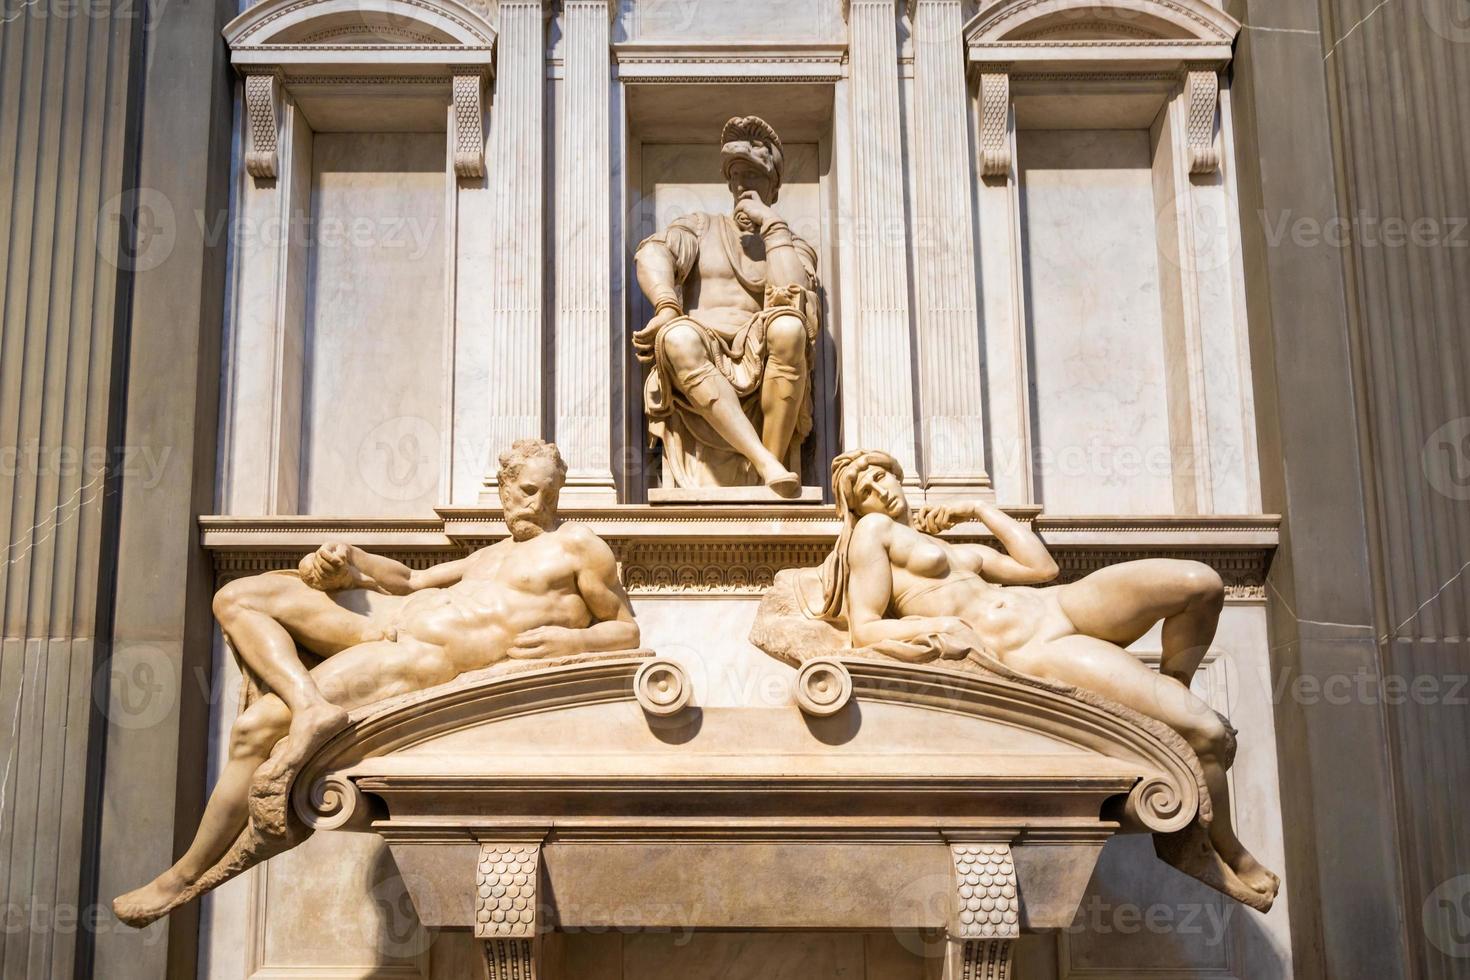 medici chapelles intérieur - cappelle medicee. art renaissance michelangelo à florence, italie. photo